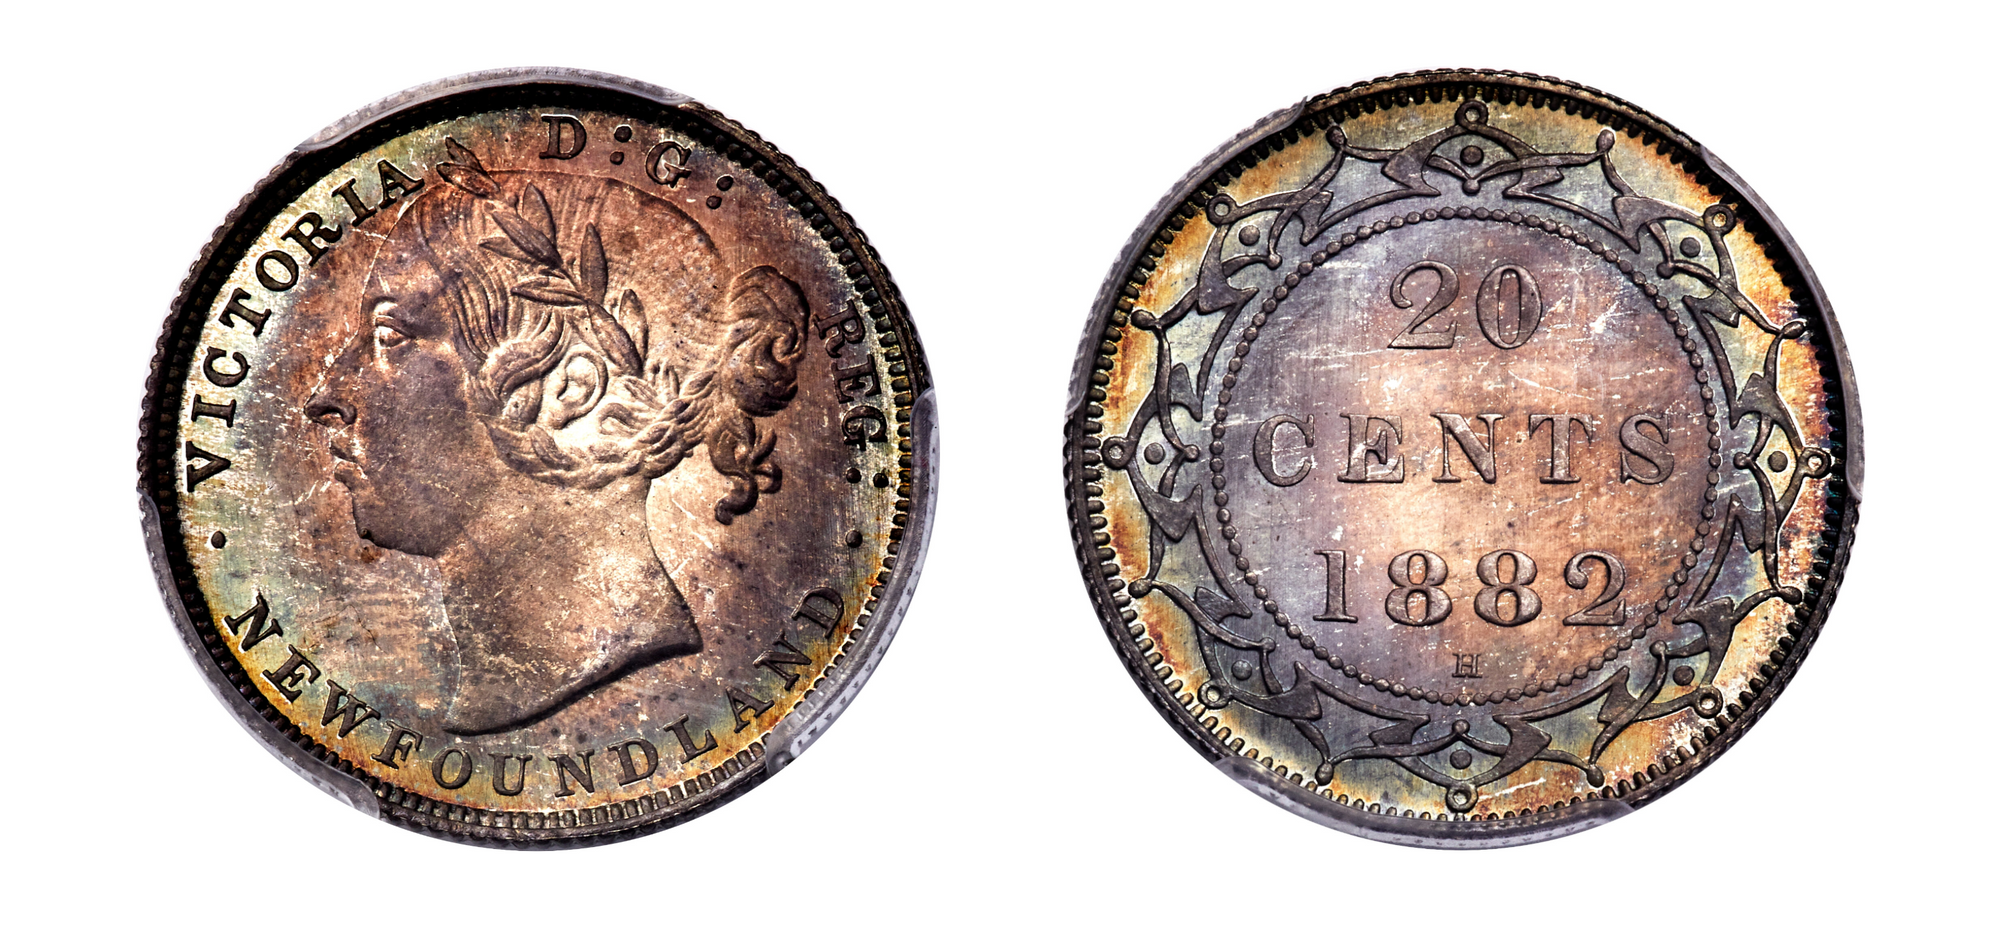 1882-H Newfoundland Victoria Specimen 20 Cents PCGS SP68 - Hard Asset Management, Inc